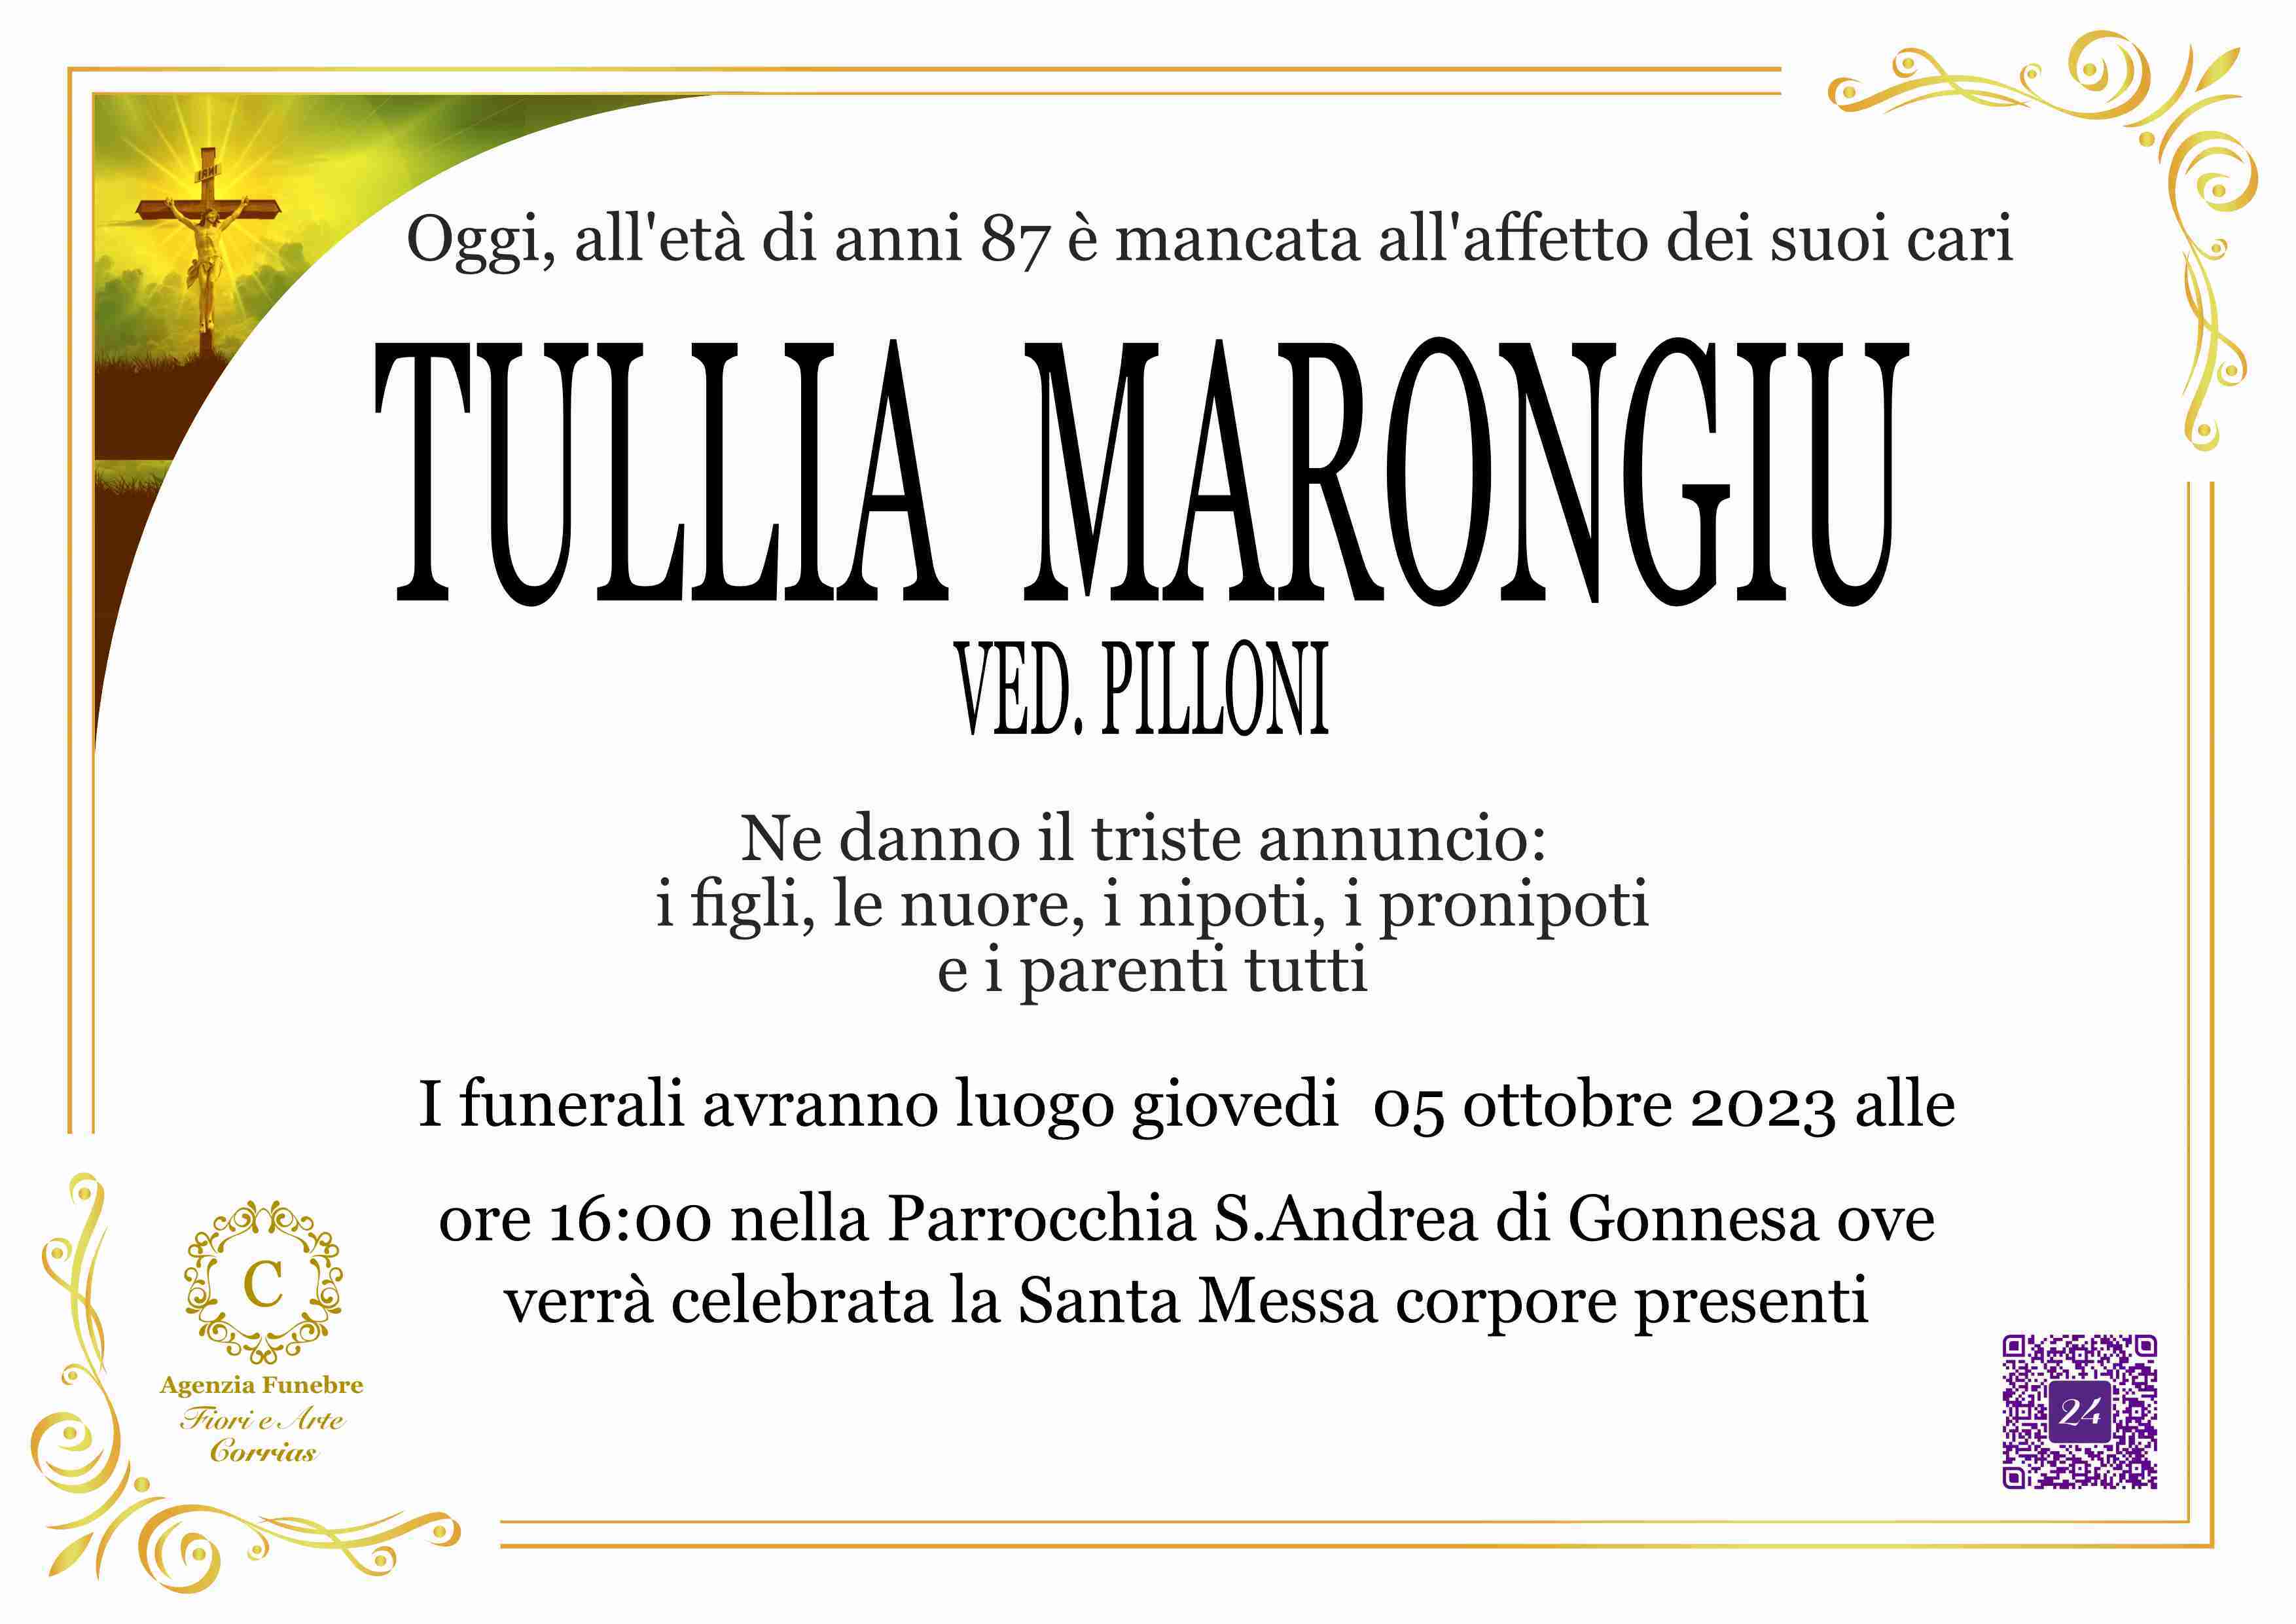 Tullia Marongiu